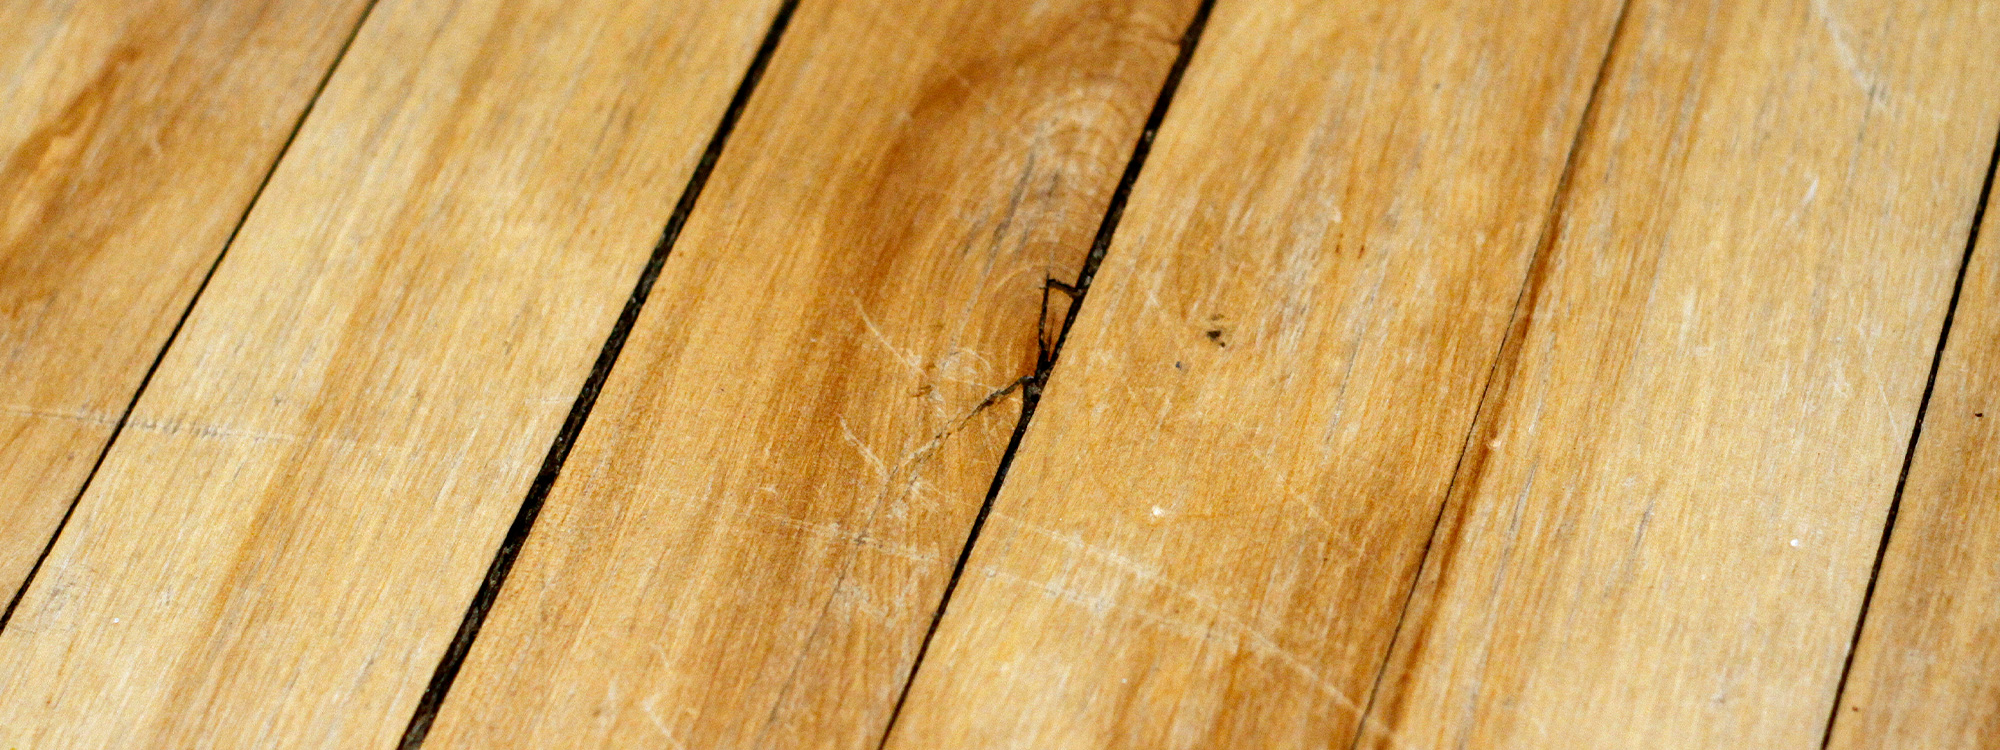 Plancher verni grafigné: sabler et vernir le plancher ou rafraichir le bois vernis?